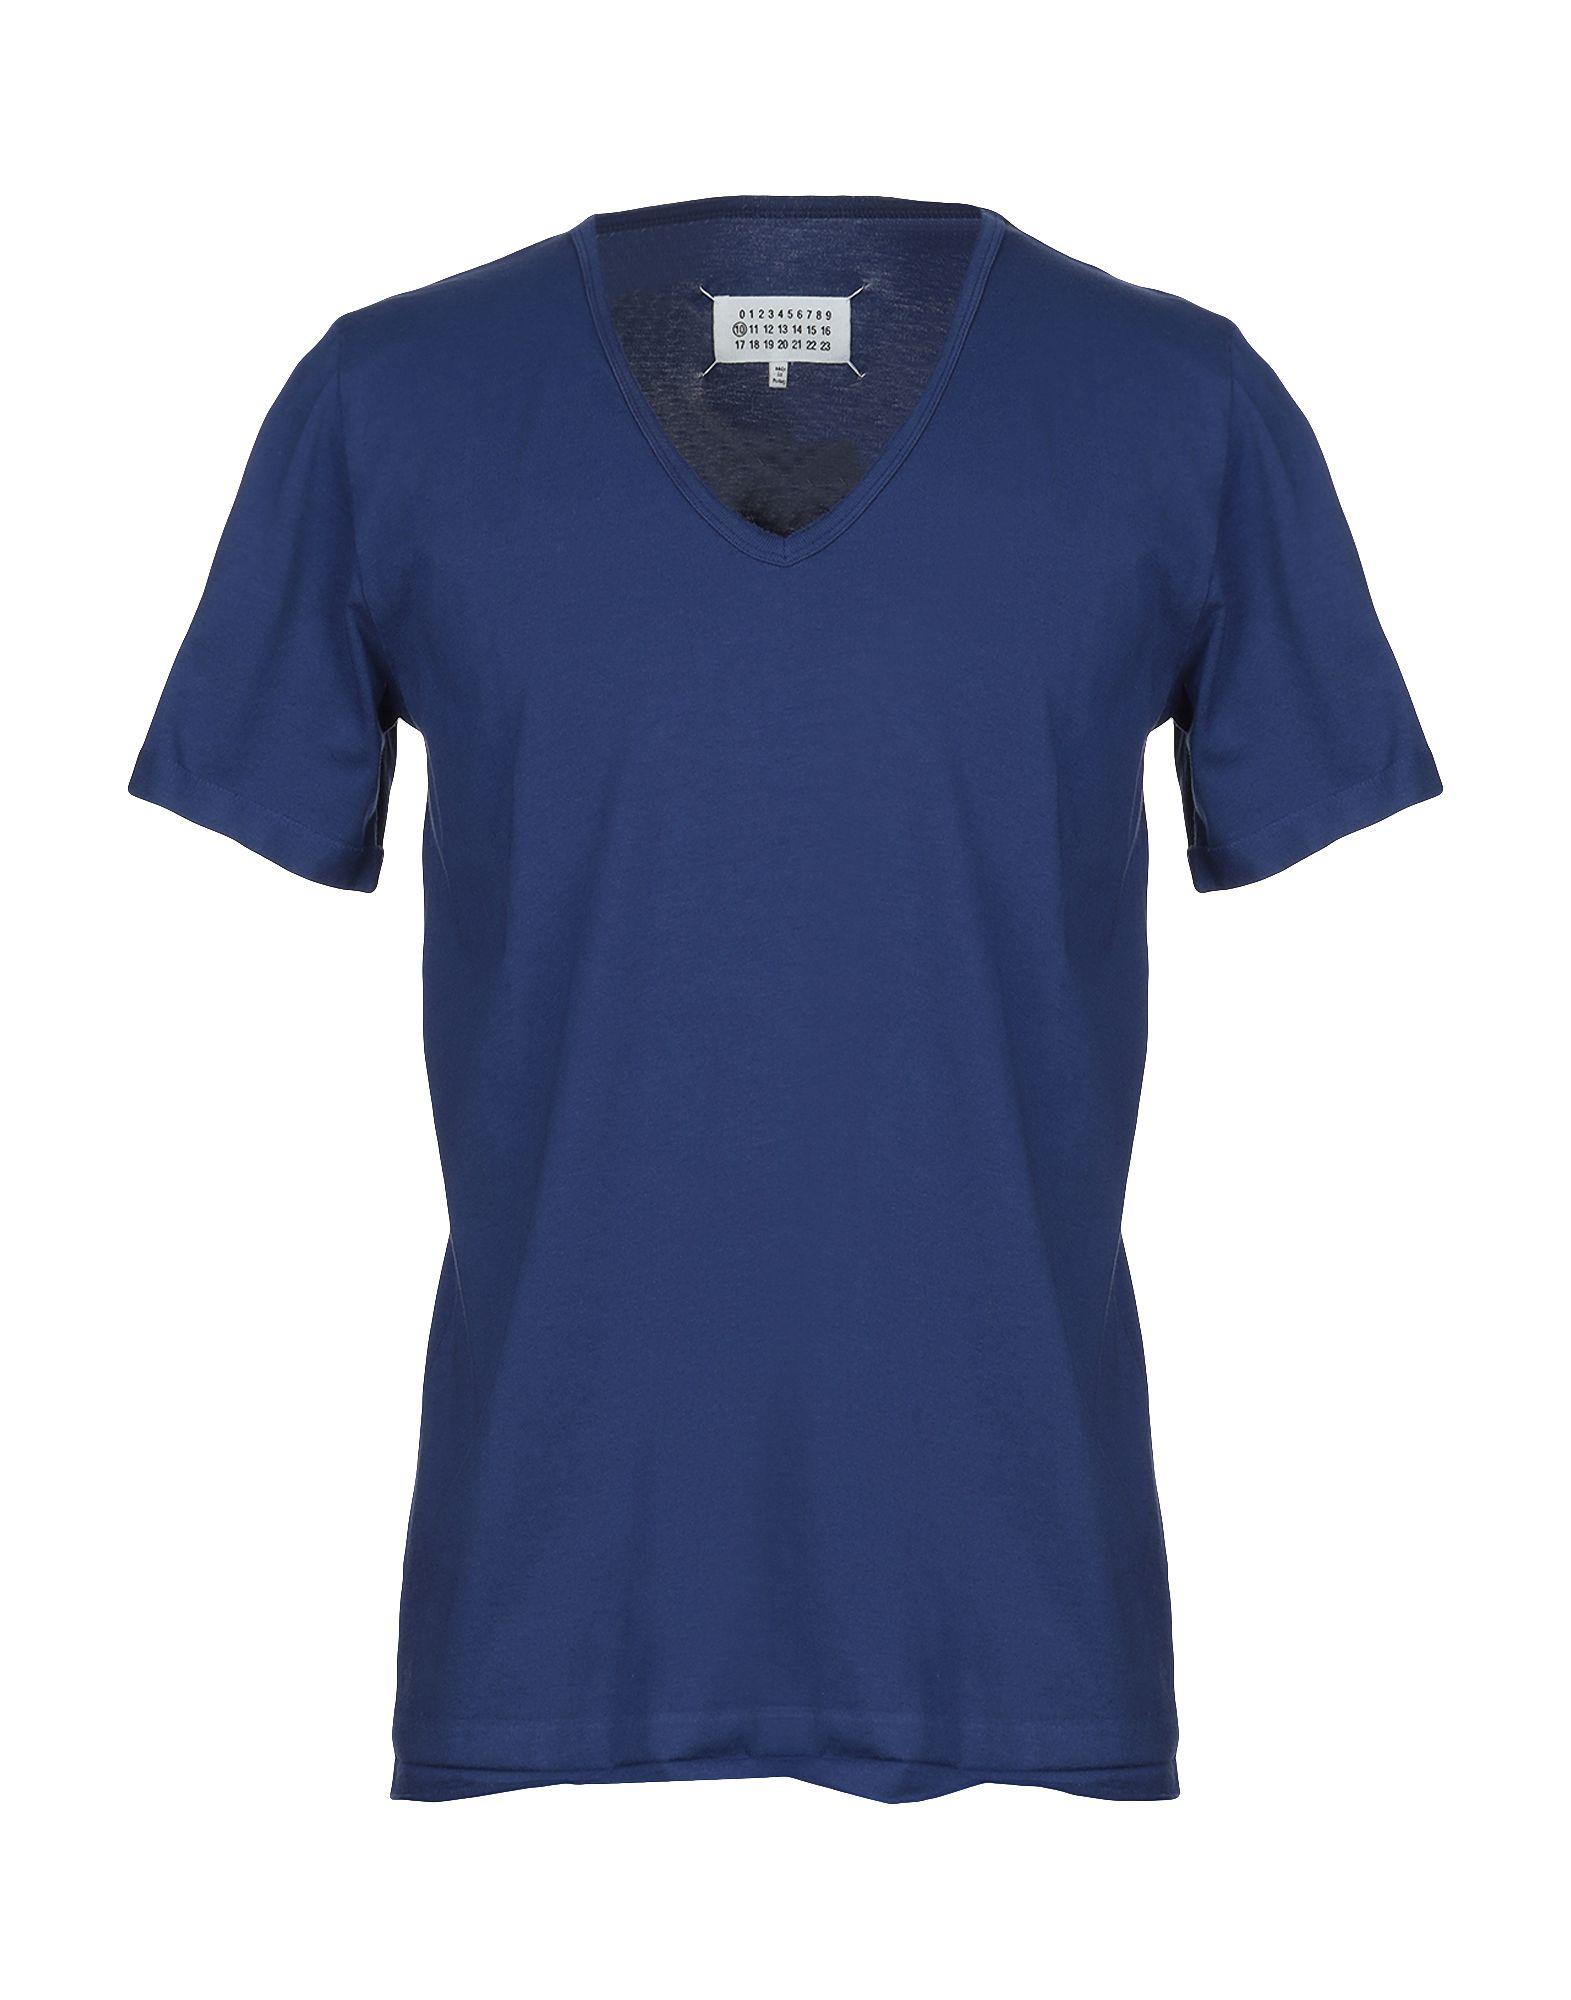 Maison Margiela Cotton T-shirt in Blue for Men - Lyst